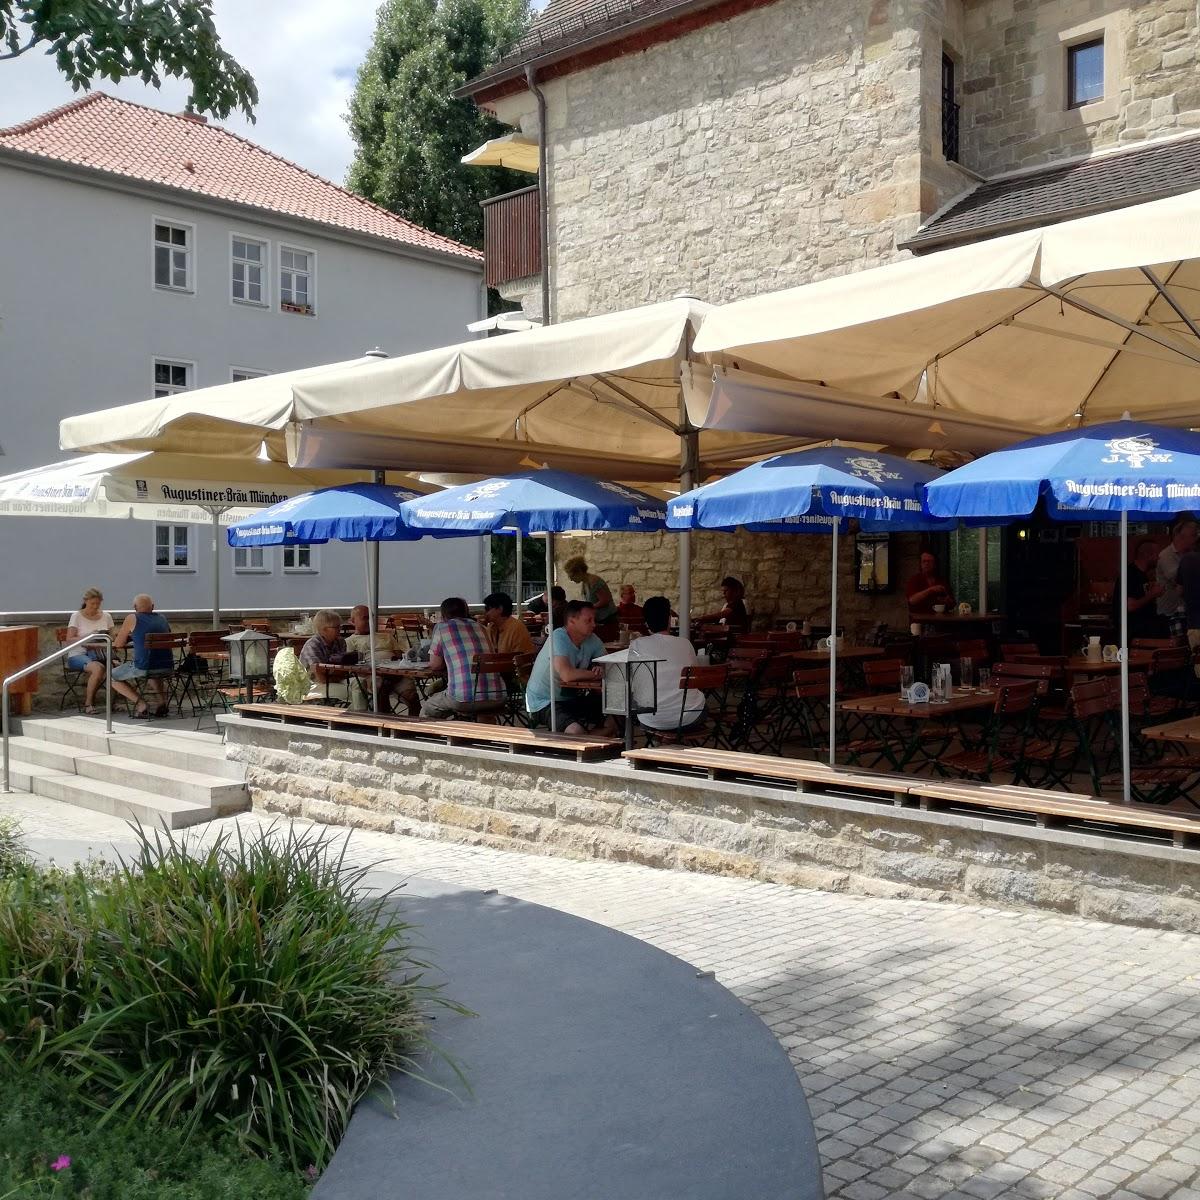 Restaurant "Augustiner" in  Erfurt